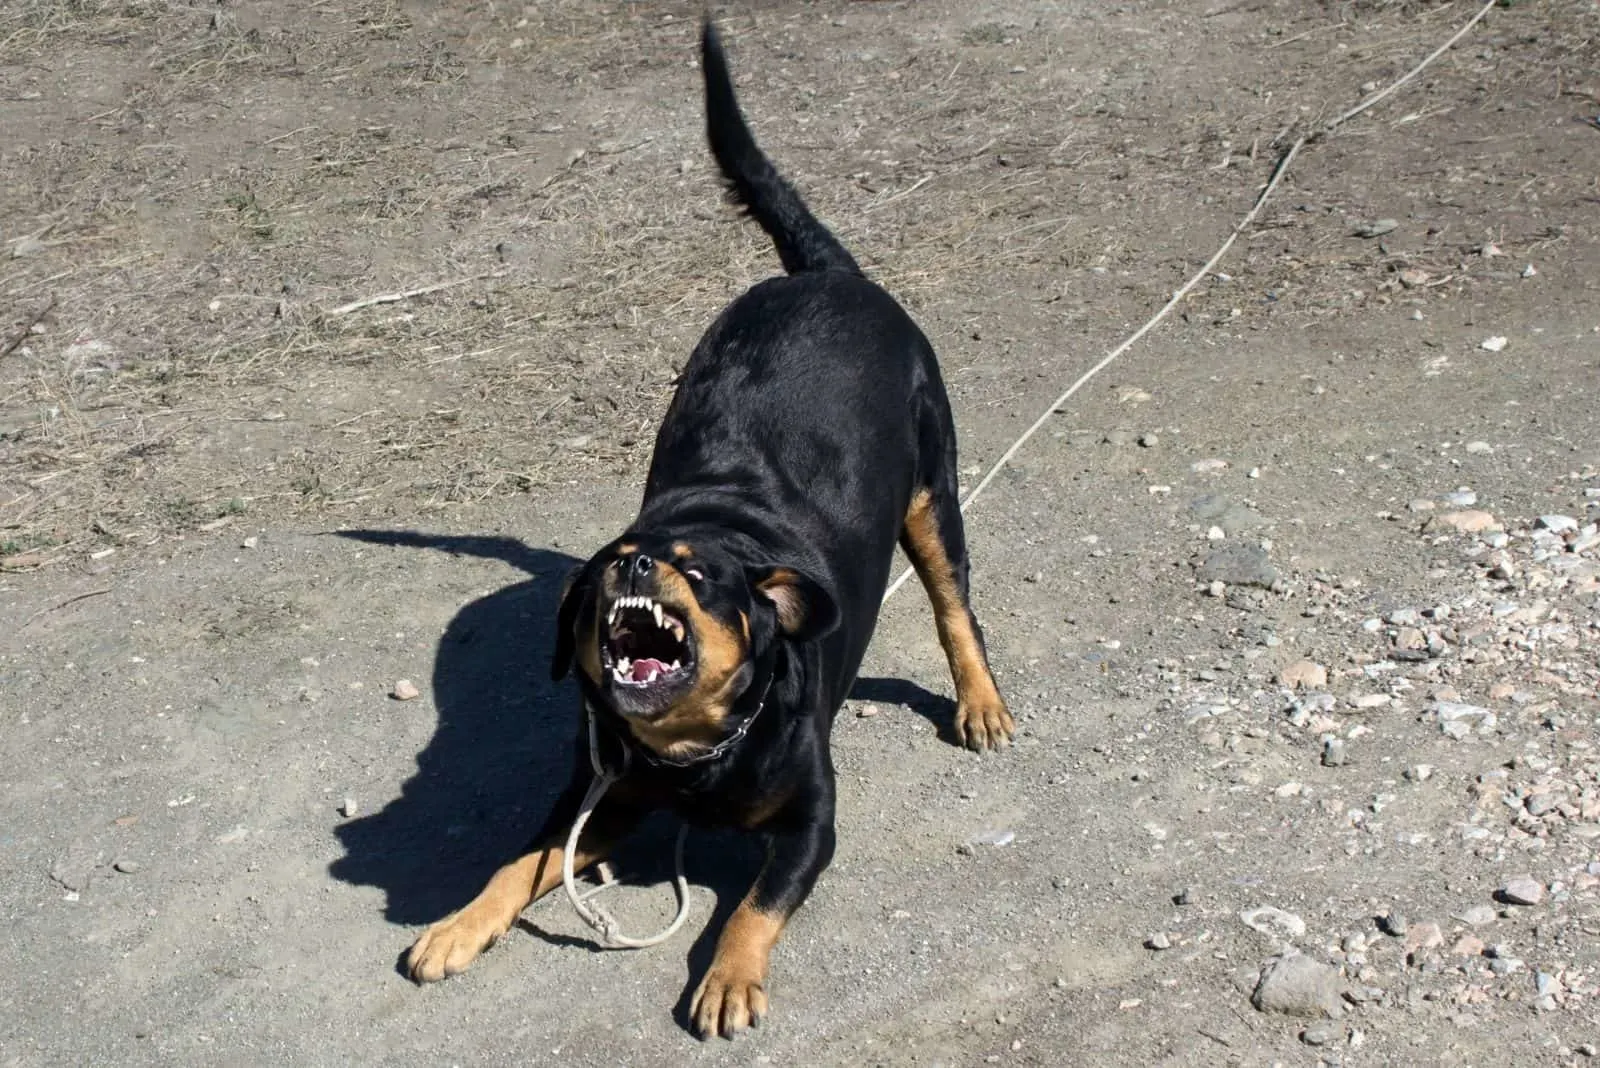 aggressive rottweiler barking showing teeth